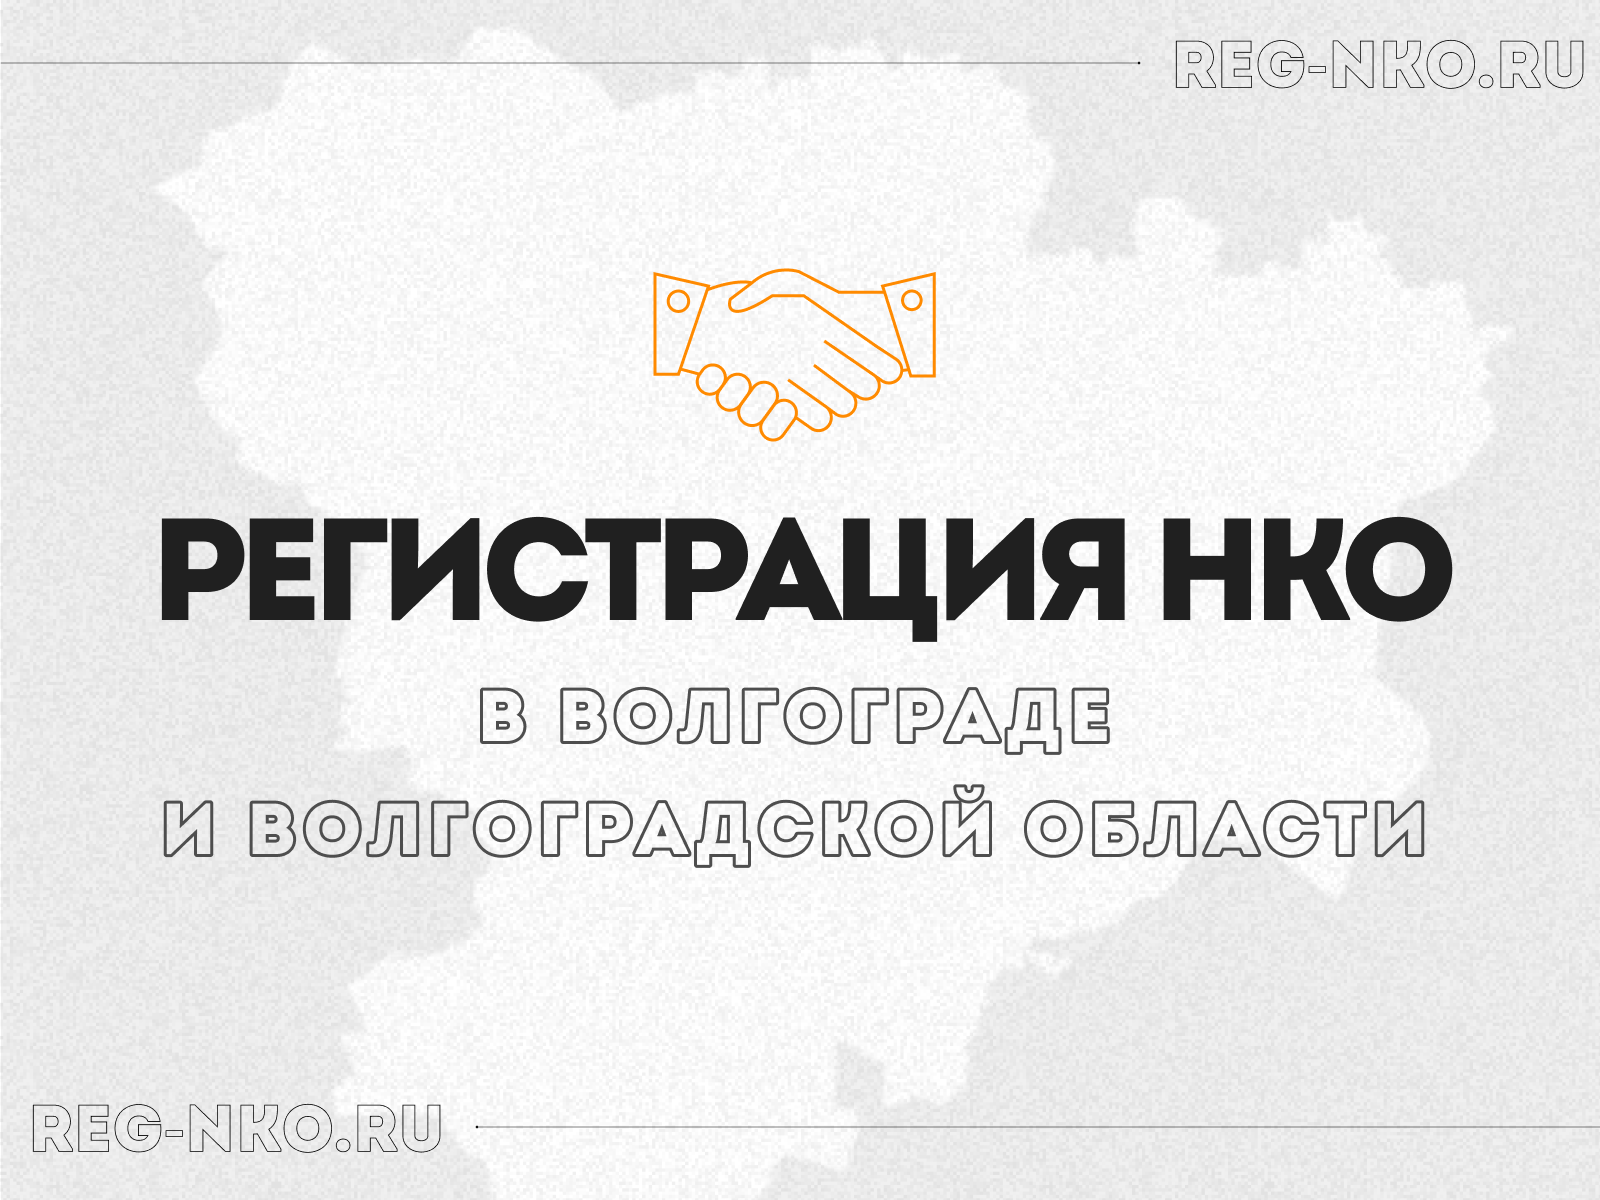 Регистрация НКО в Волгограде и Волгоградской области